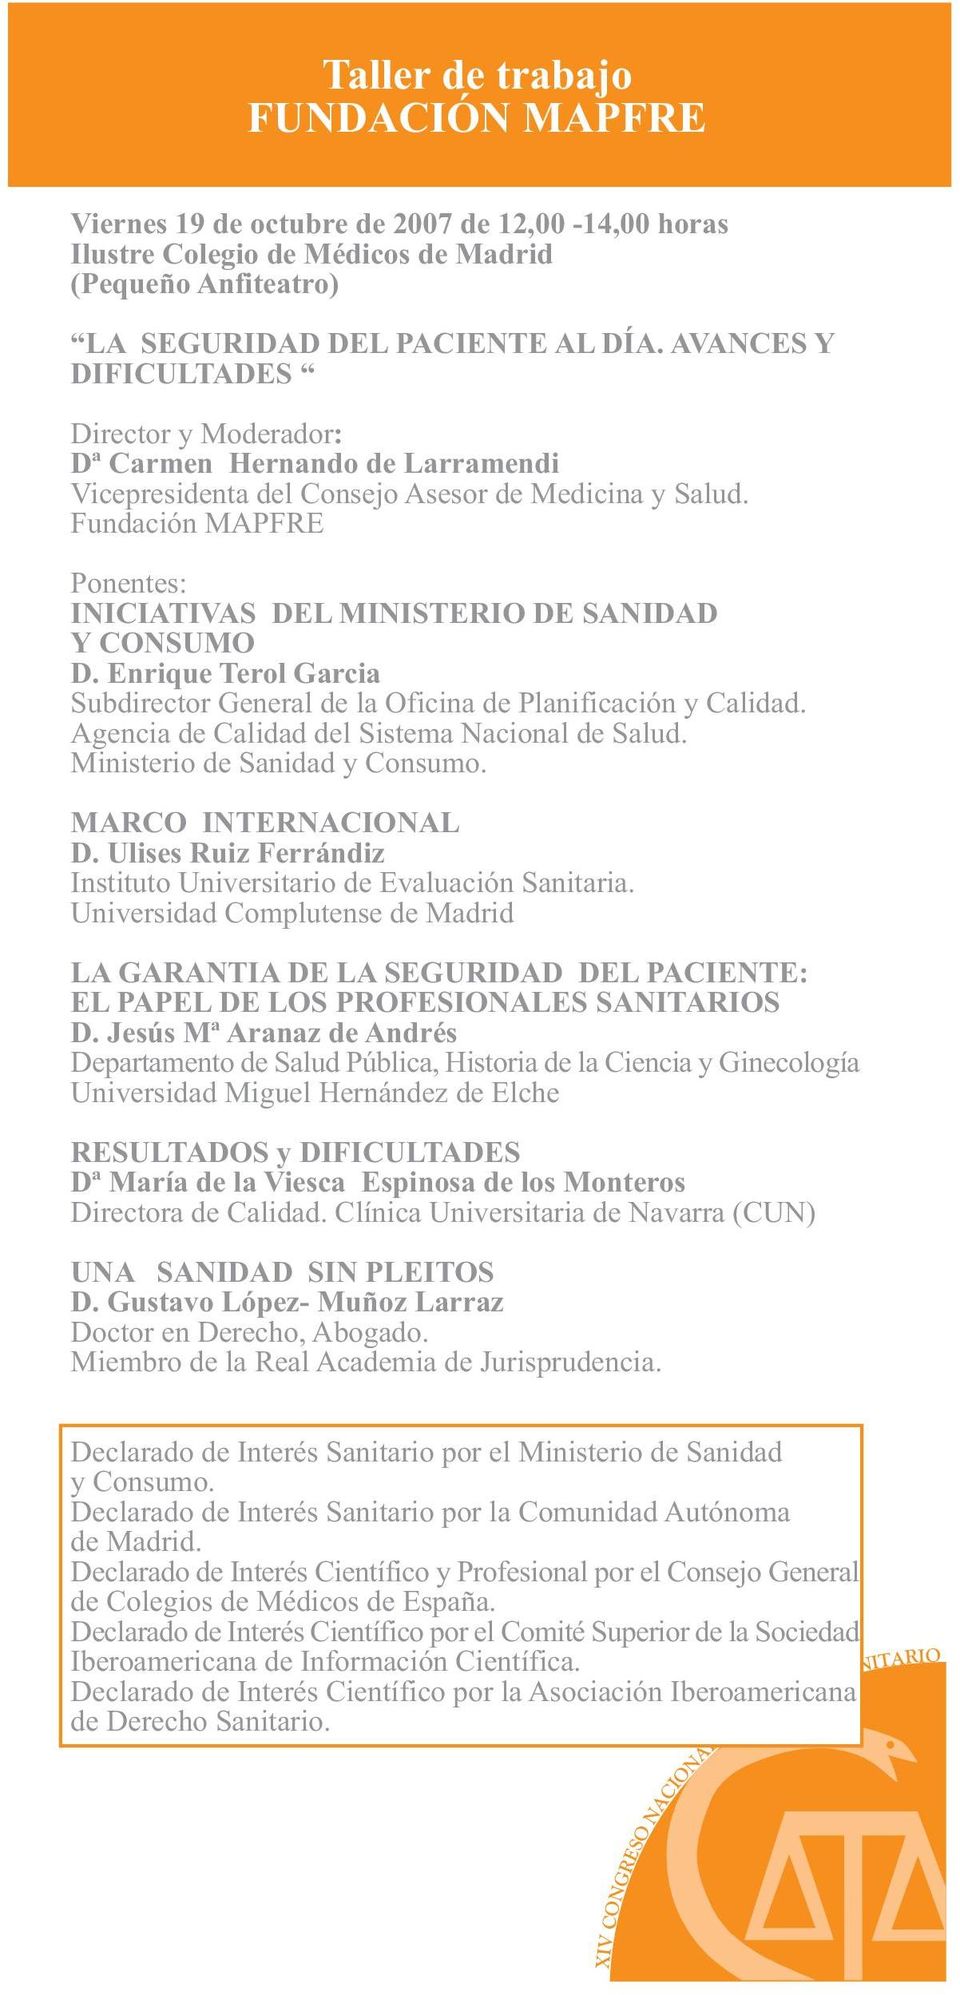 Fundación MAPFRE Ponentes: INICIATIVAS DEL MINISTERIO DE SANIDAD Y CONSUMO D. Enrique Terol Garcia Subdirector General de la Oficina de Planificación y Calidad.